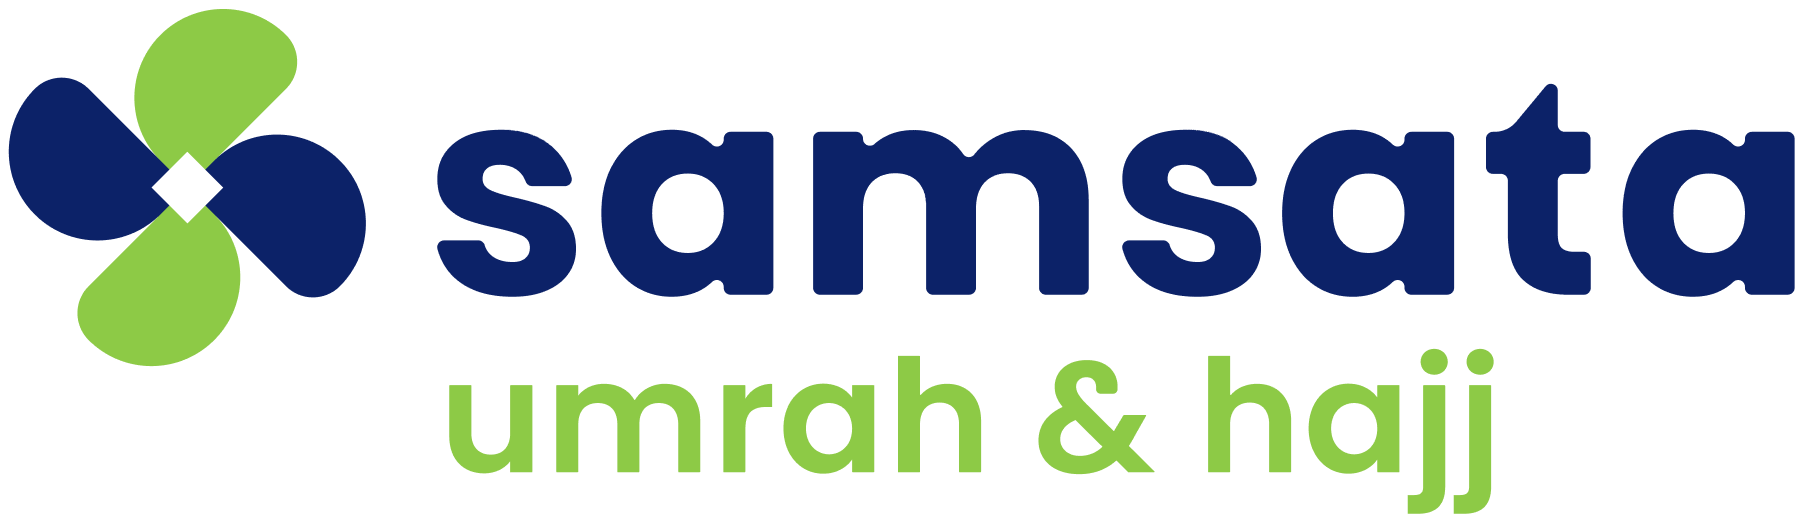 Samsata Umrah Hajj Logo